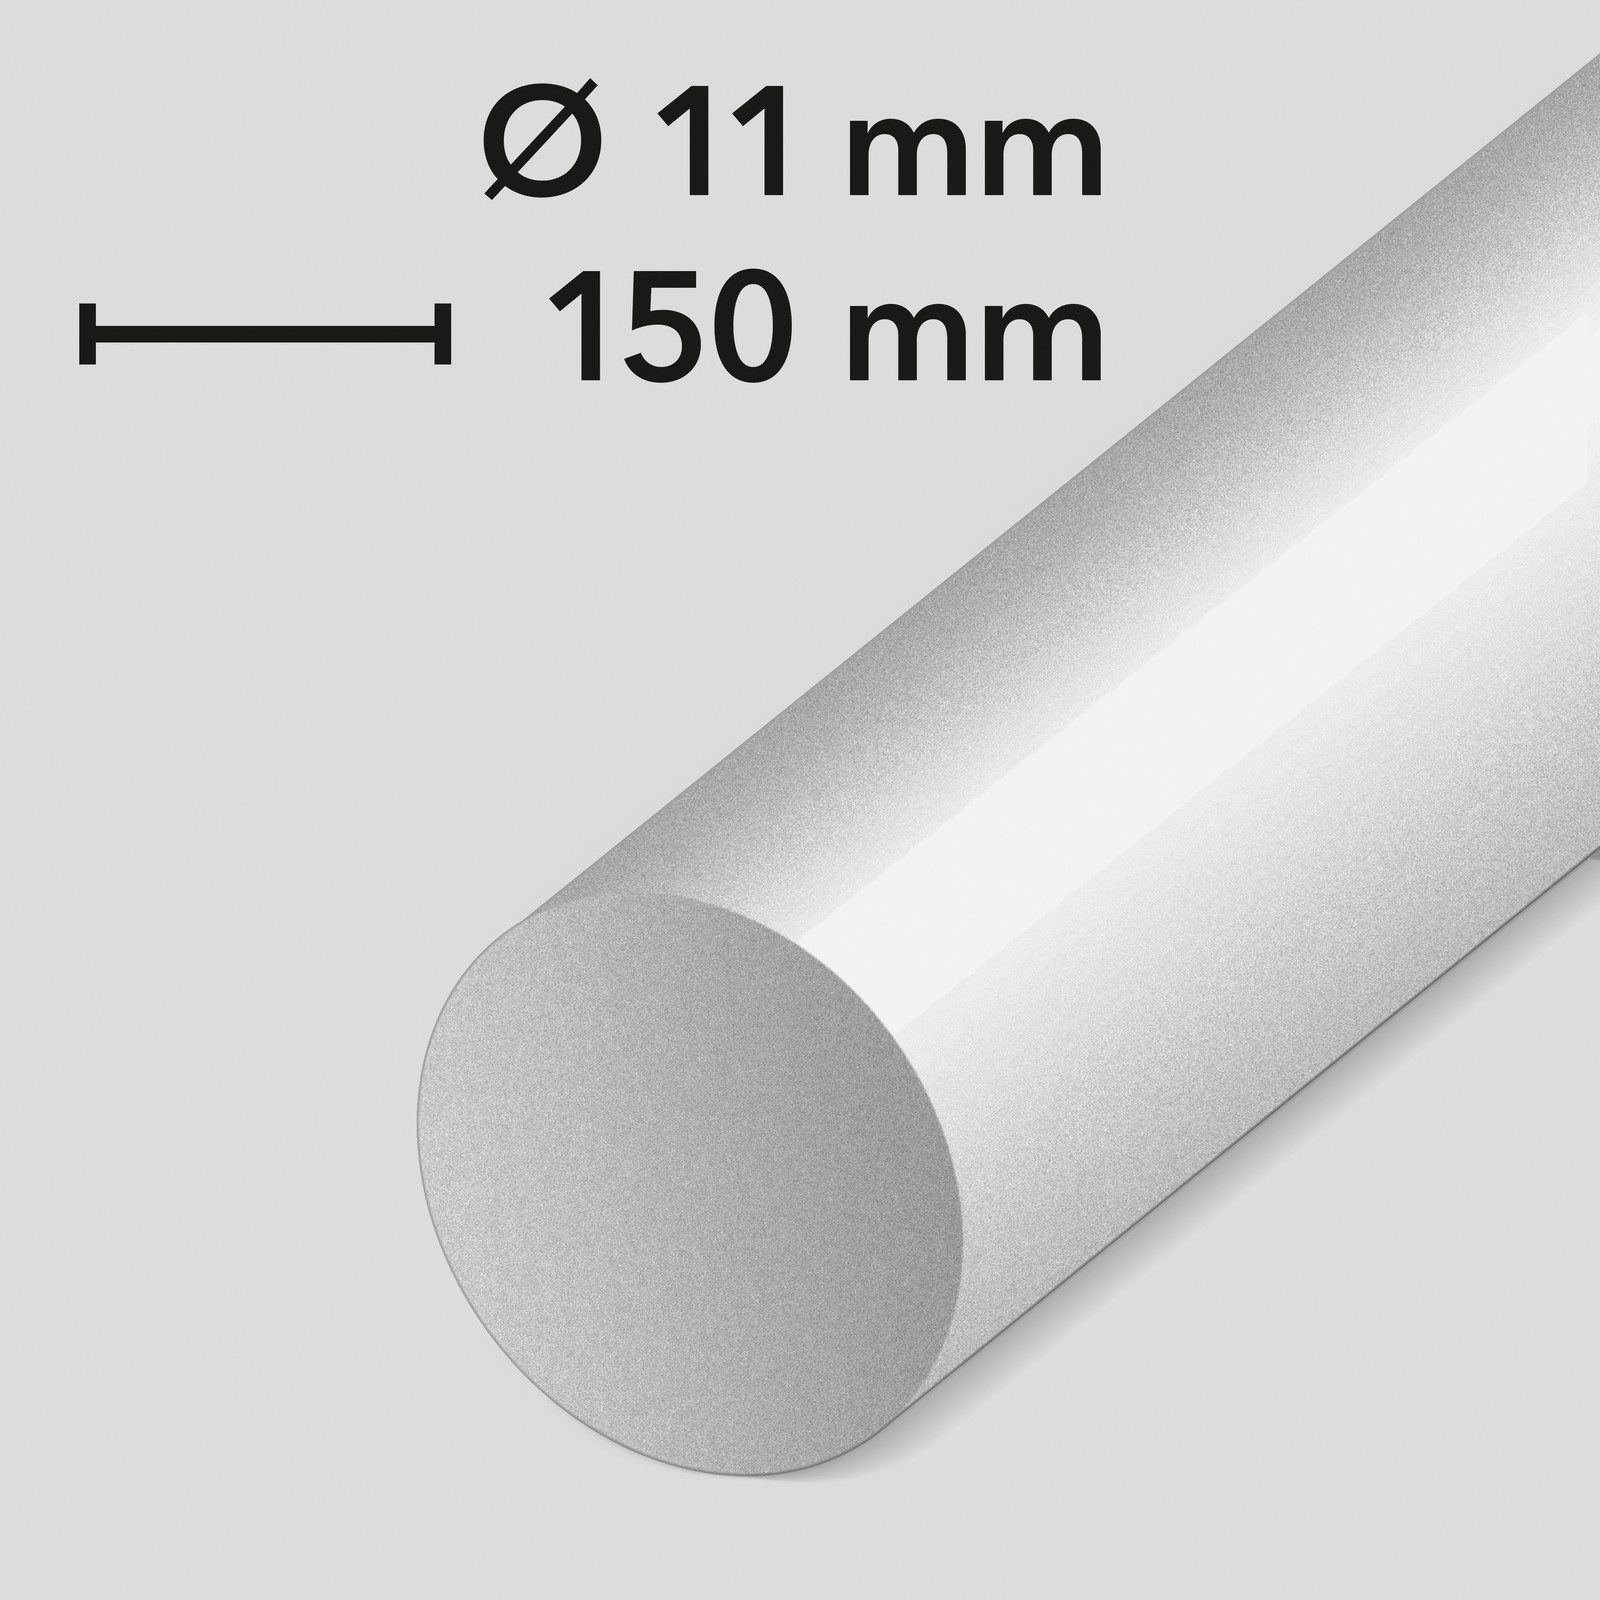 Limpatroner (11 mm / 150 mm)